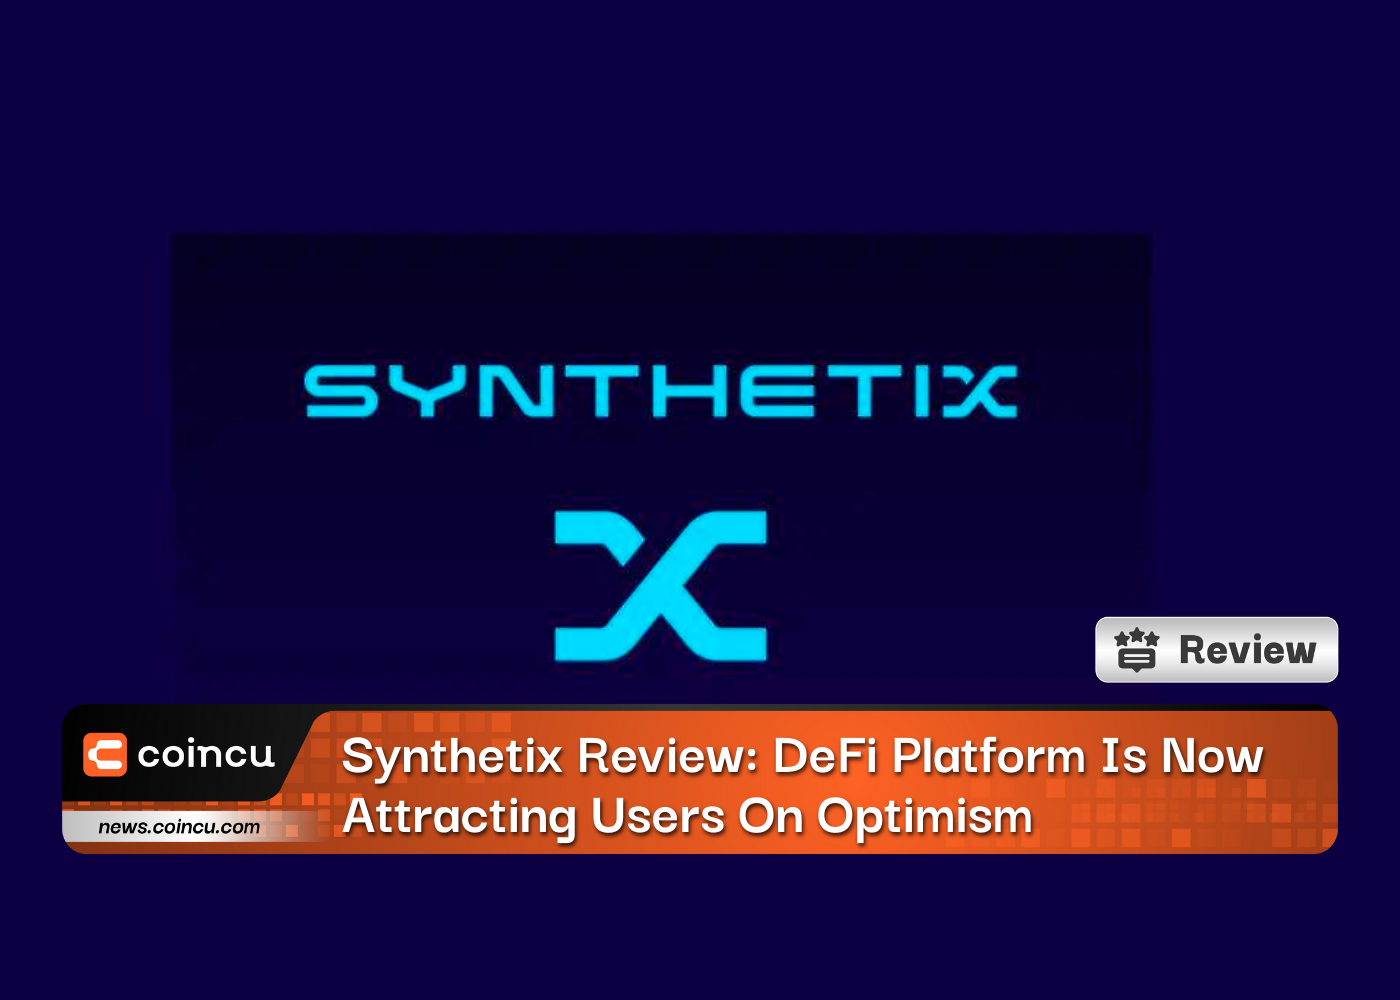 Обзор Synthetix: платформа DeFi теперь привлекает пользователей оптимизмом